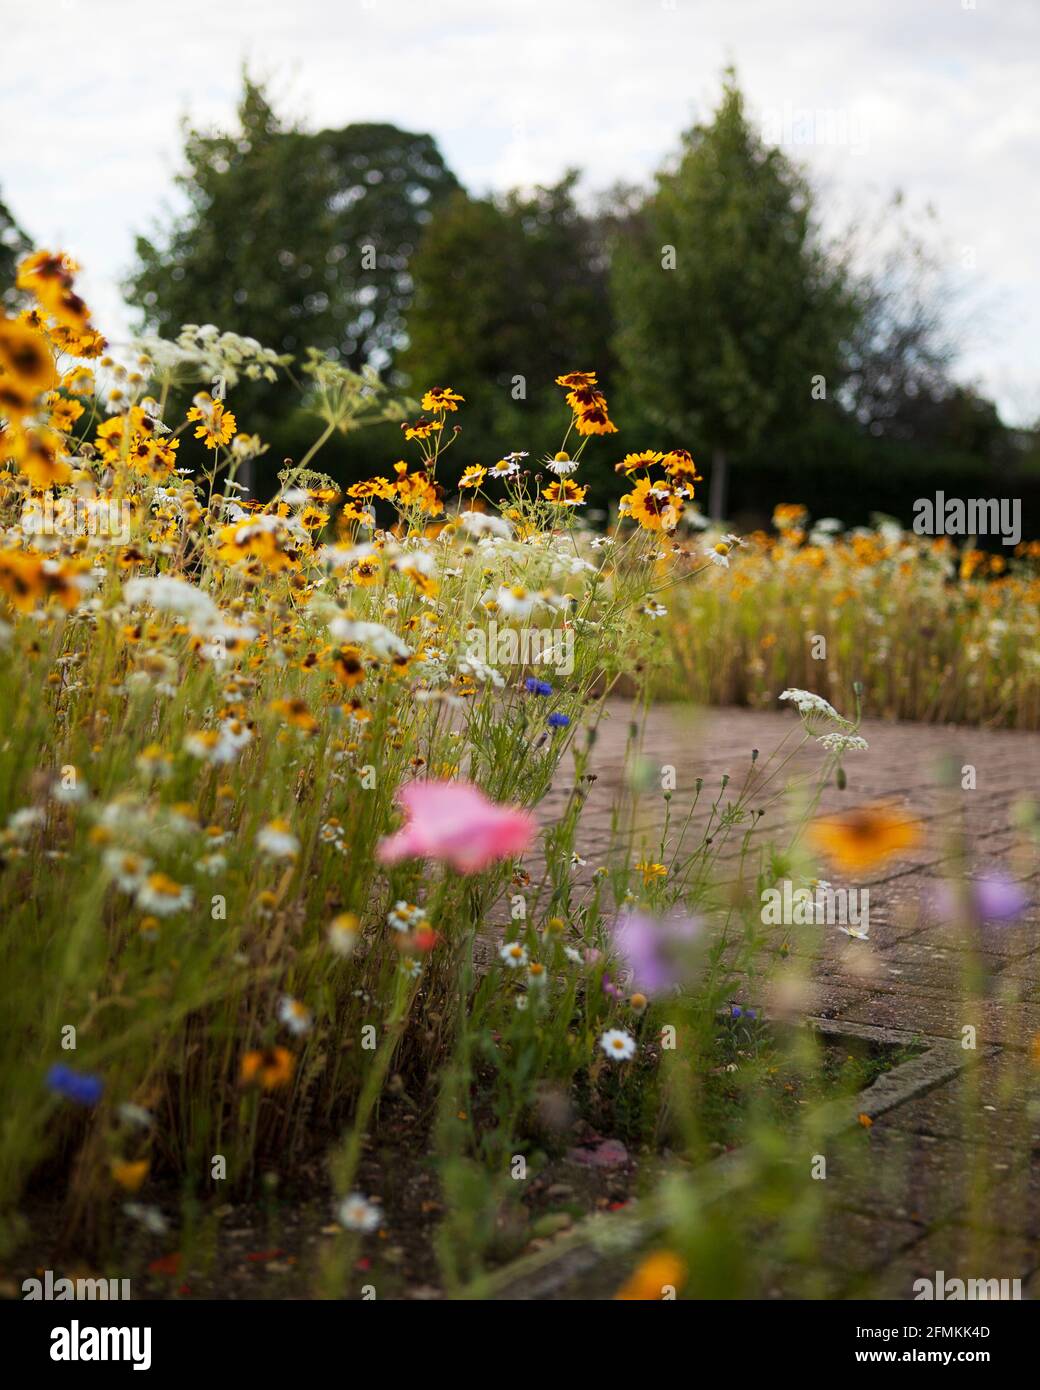 Flores silvestres incluyendo Susan de ojos negros (Rudbeckia), cornflowers (Centaurea cyanus) y margaritas creciendo en una frontera del jardín al lado de caminos pavimentados de bloque Foto de stock